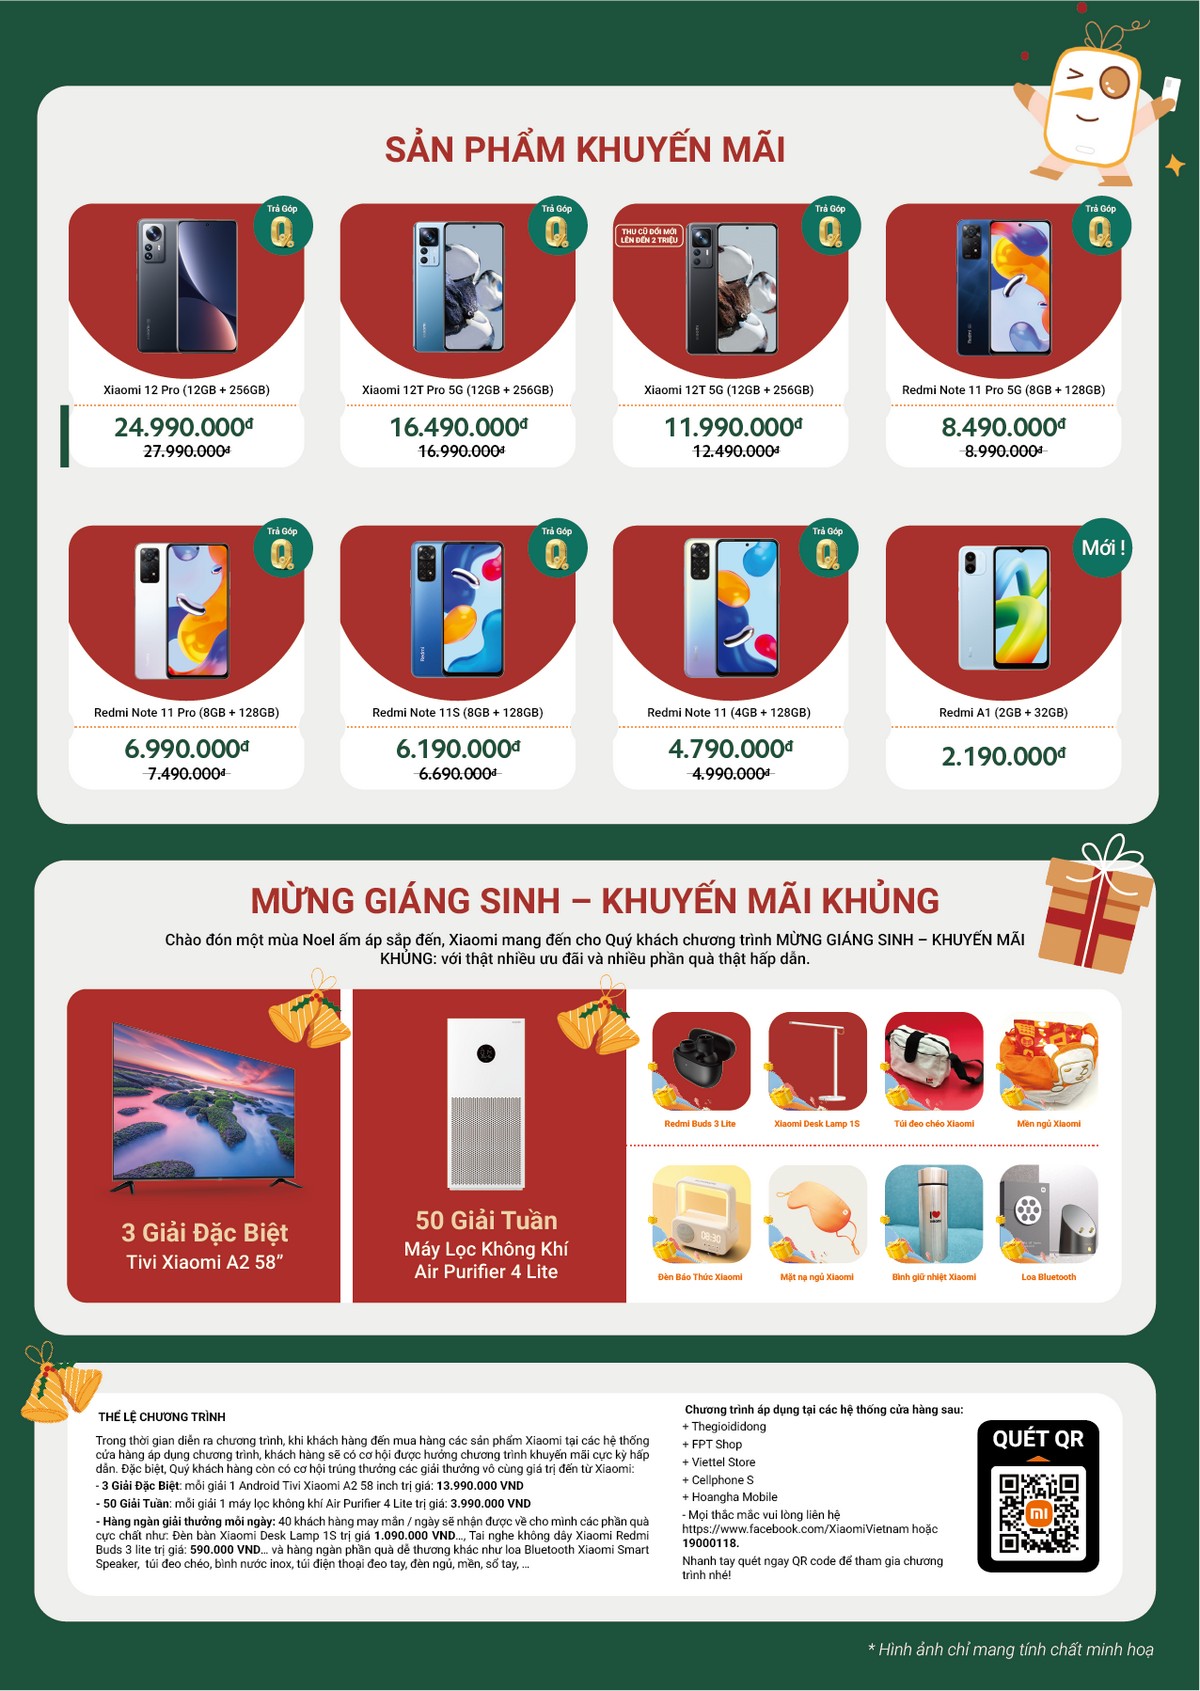 Xiaomi Việt Nam: Tưng bừng khuyến mãi mùa lễ hội cuối năm với nhiều ưu đãi hấp dẫn